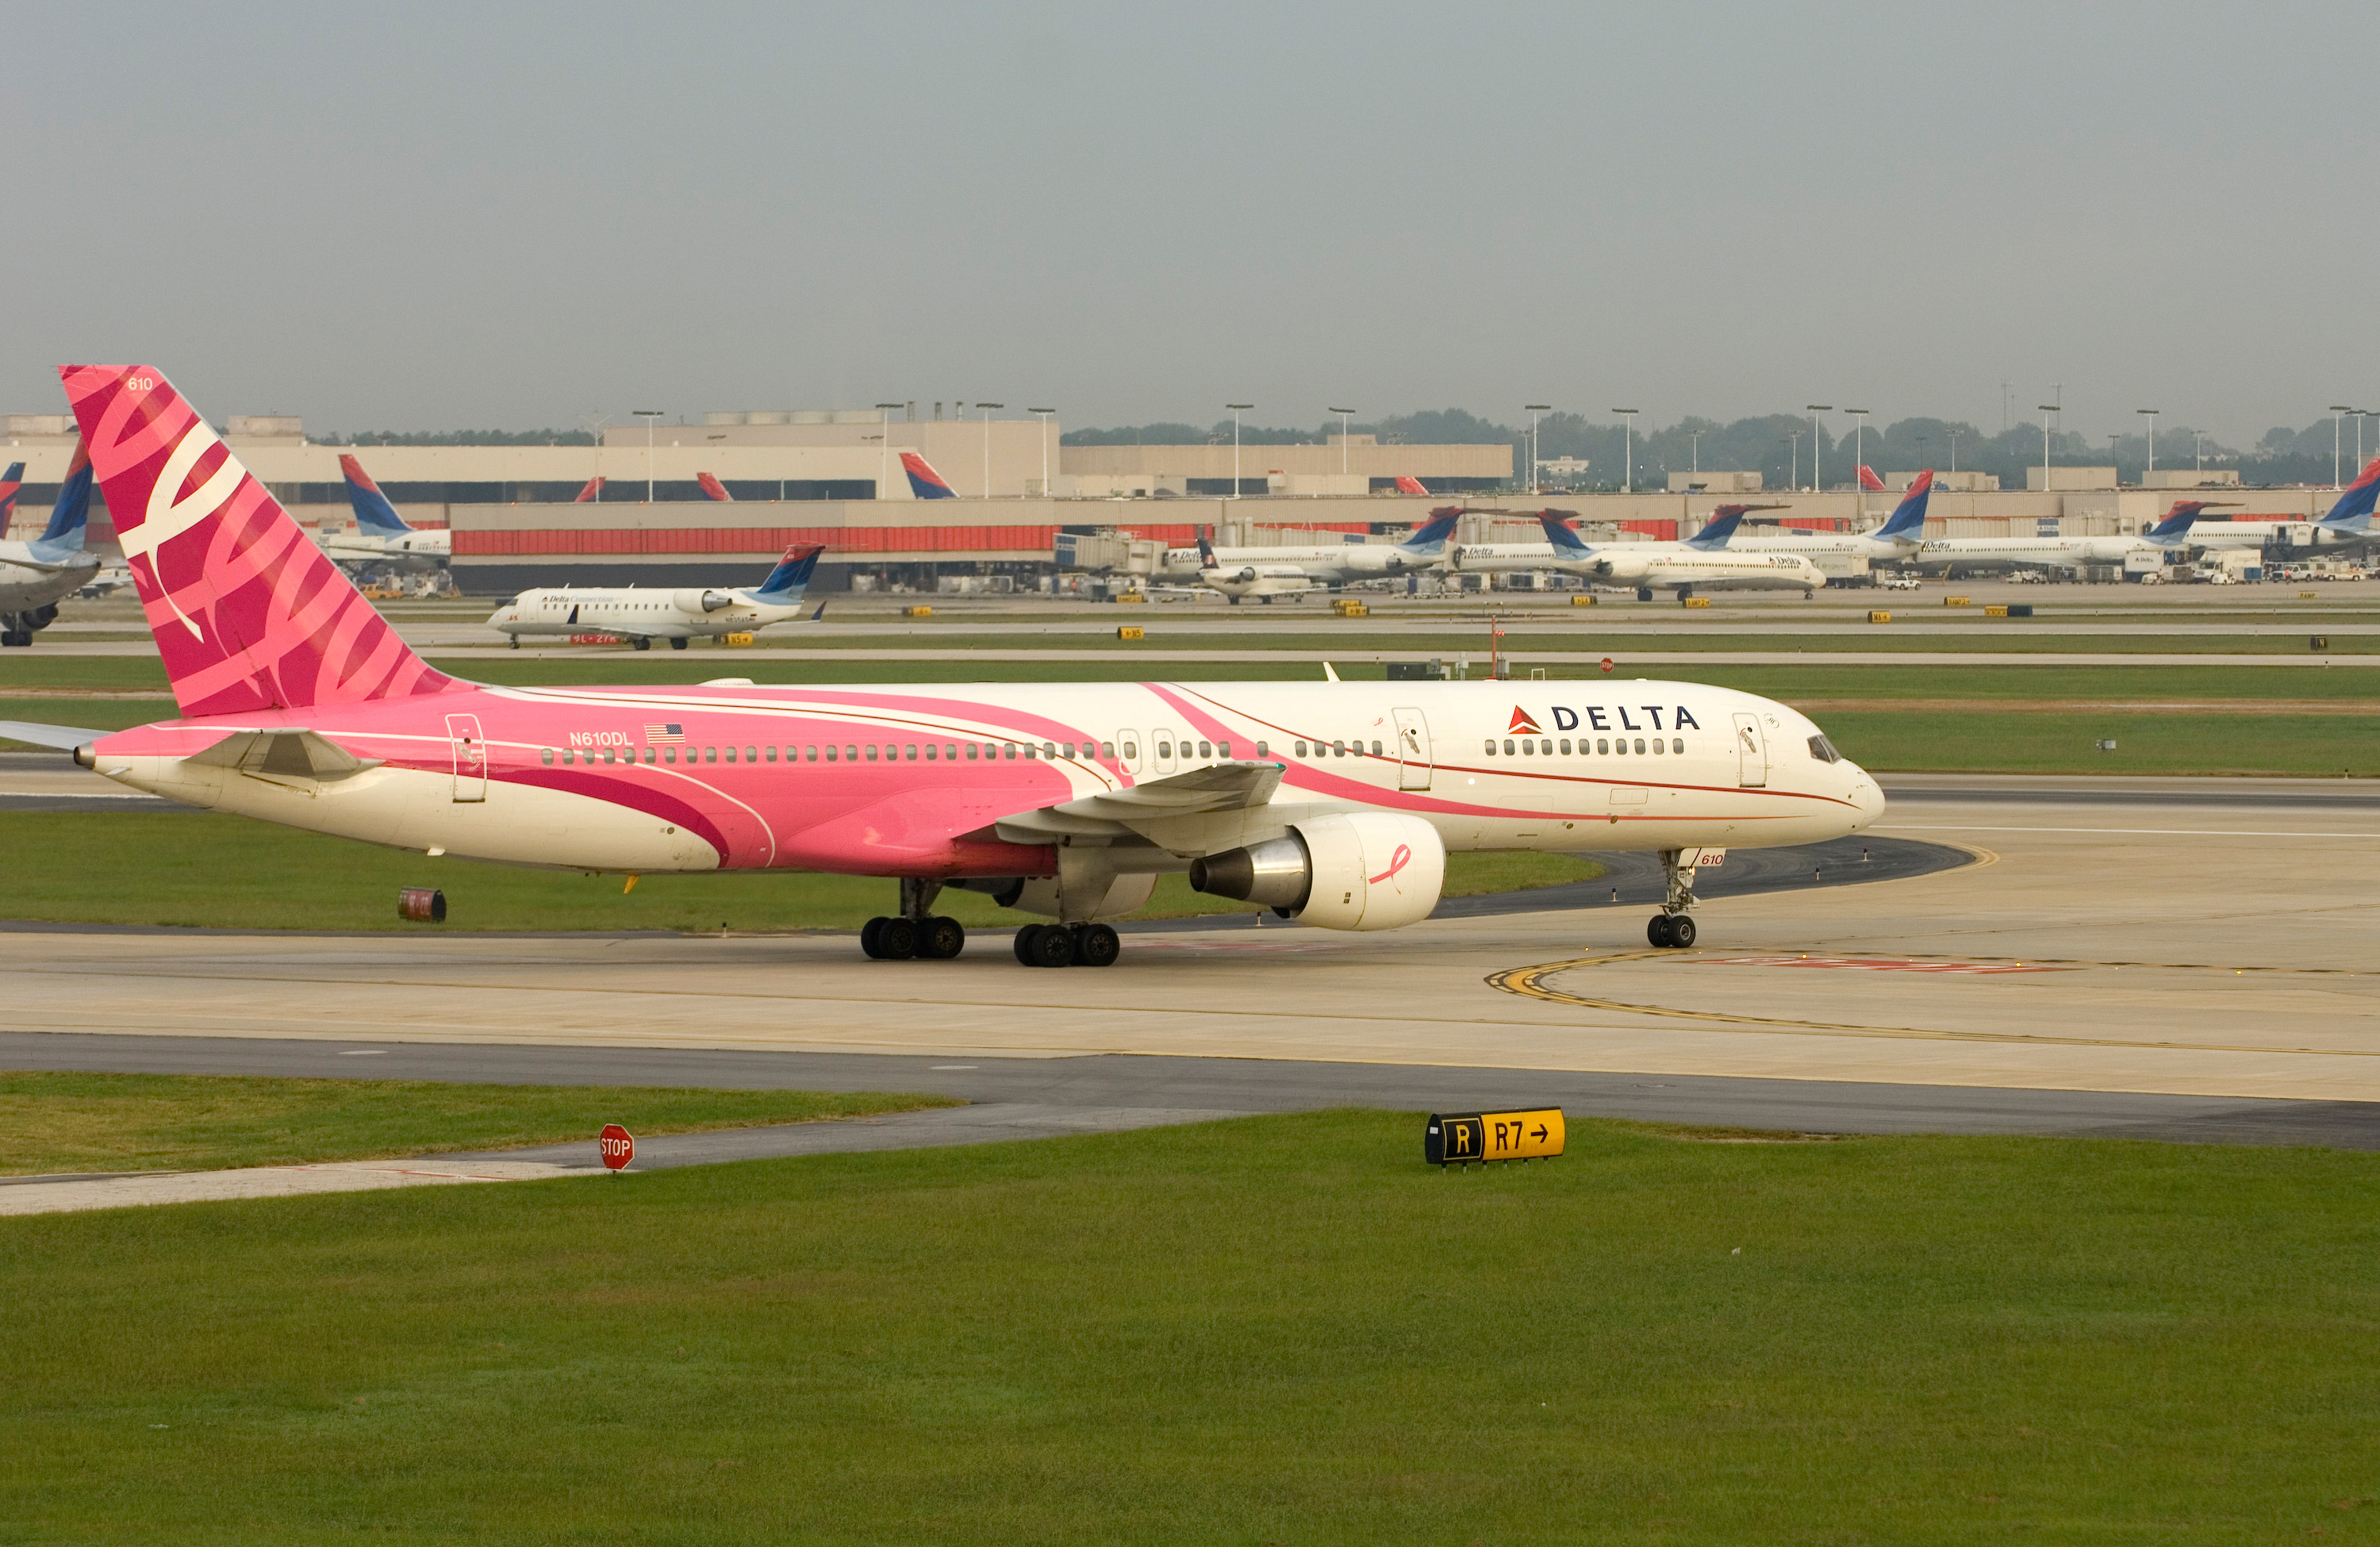 Delta Pink Plane